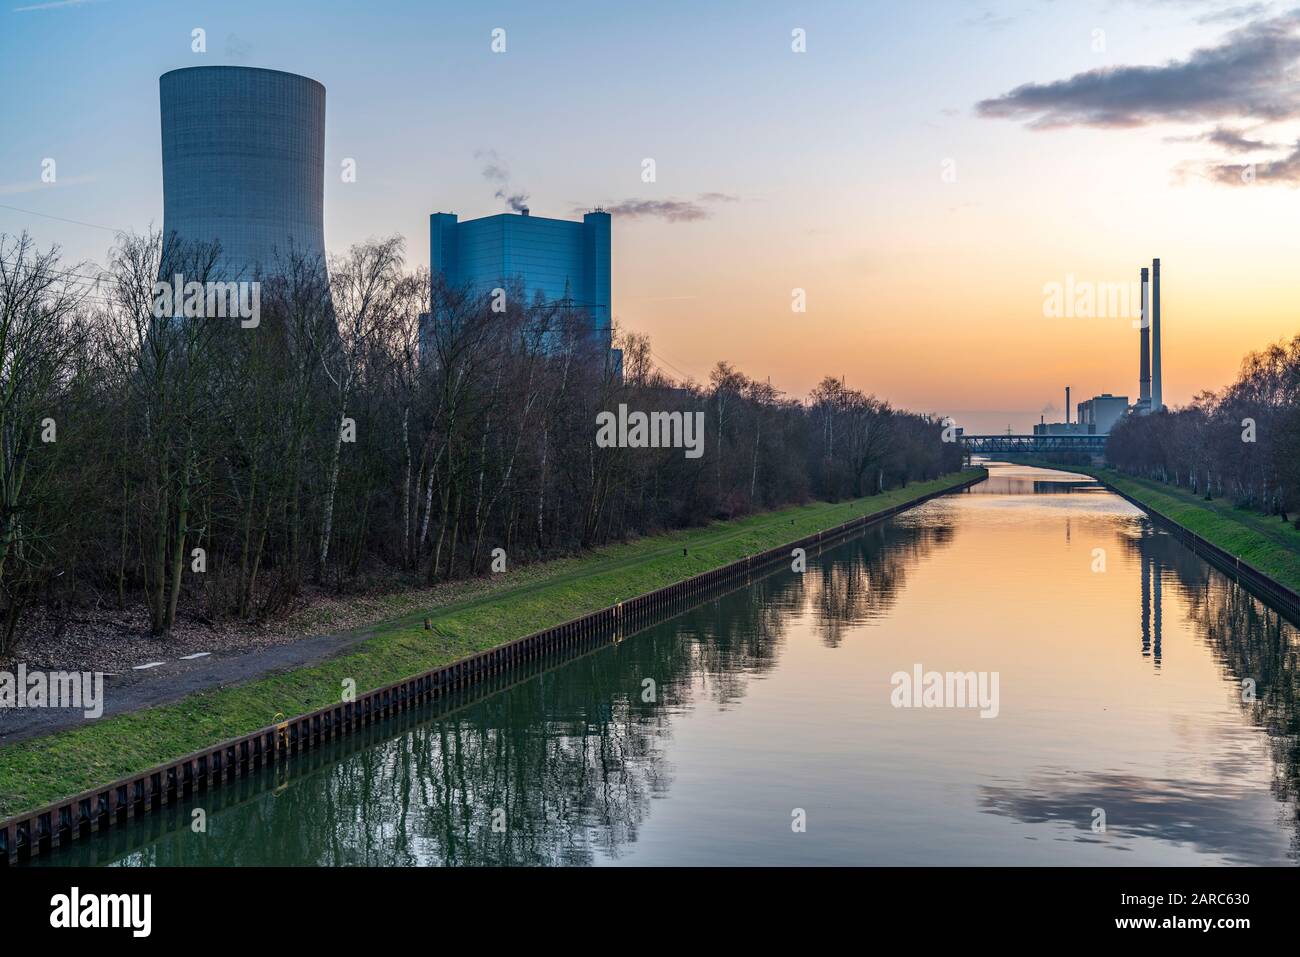 Das Steinkohlekraftwerk Datteln 4, betrieben von Uniper, am Dormtund-Ems-Kanal, es soll, nach dem Kohlekompromiss, im Sommer 2020 ans Netz gehen, rech Stock Photo